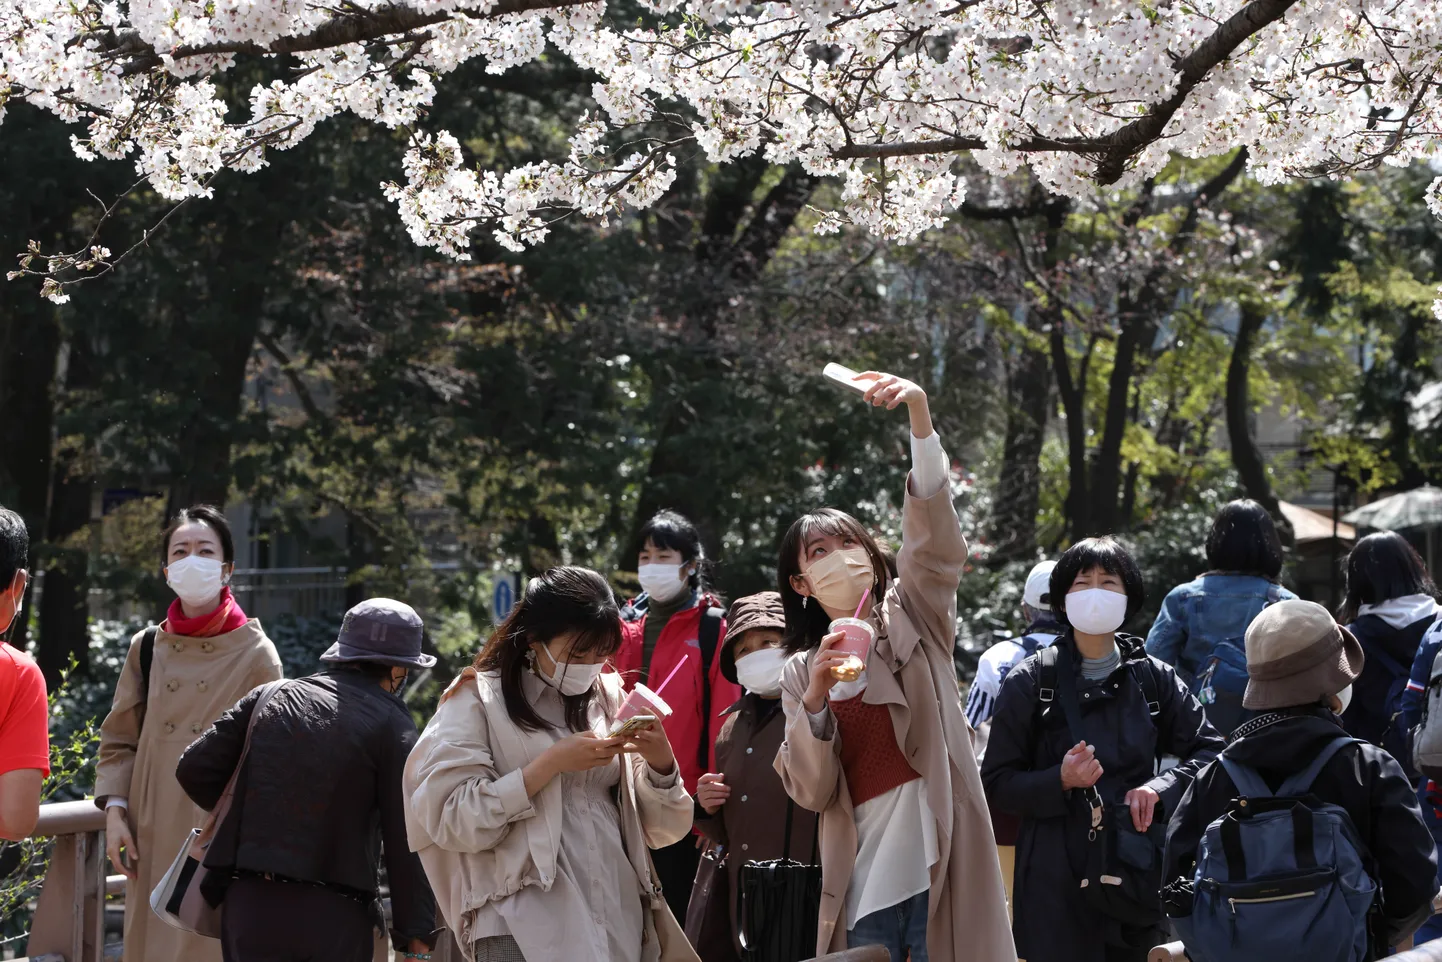 Jaapani naised Tokyos traditsioonilisel kirsside õitsemise ajal, 26. märtsil 2021. aastal. Kirsid õitsevad Jaapanis ära üha kiiremini ja neid ähvardab välja suremine puid ohustava haiguse leviku tõttu.